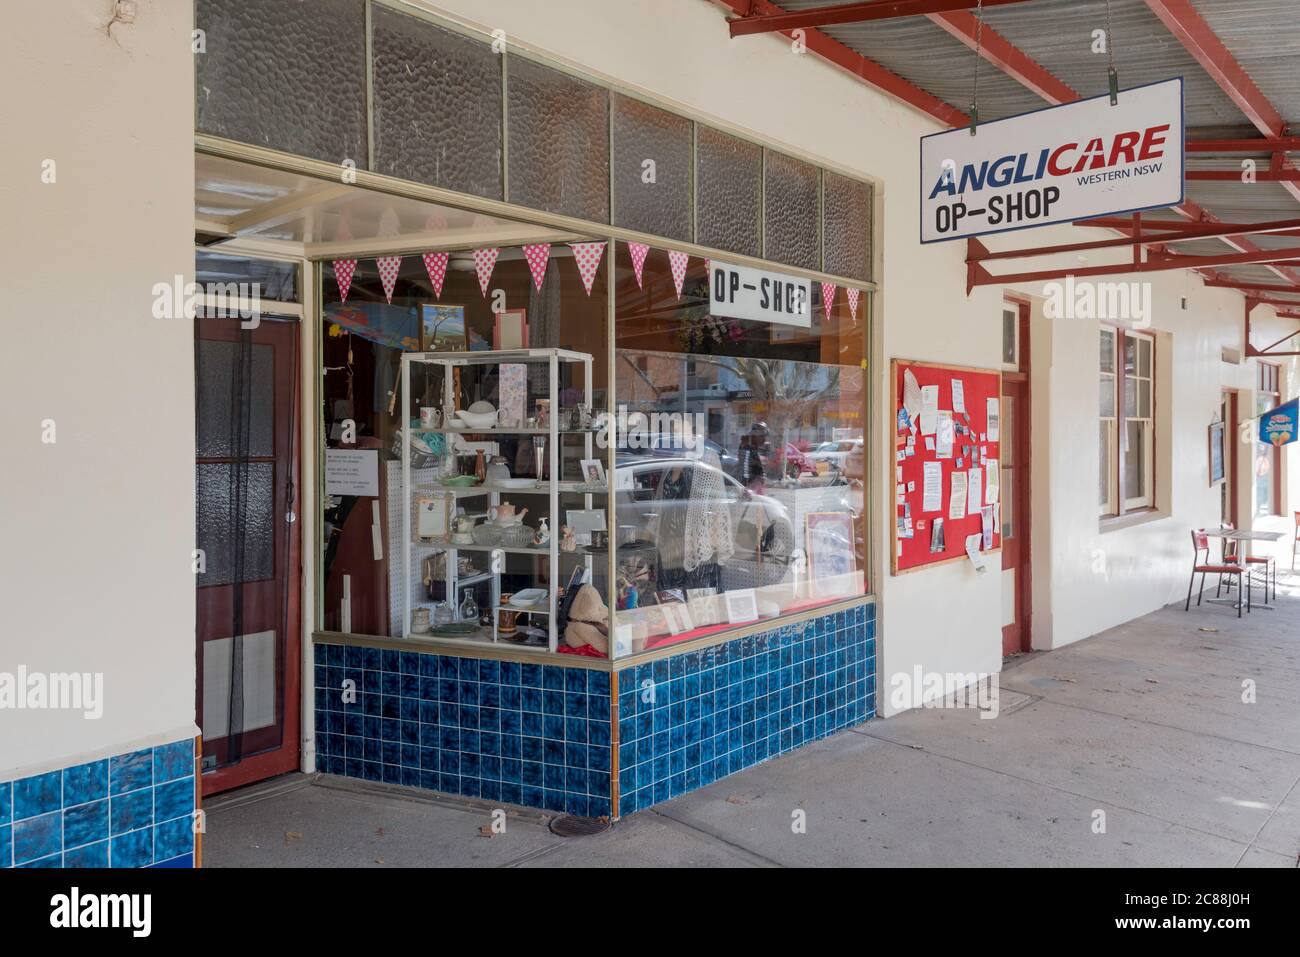 La tienda de Op de Anglicare (tienda de oportunidad o tienda de ahorro) en la ciudad rural de Rylstone en el medio oeste de Nueva Gales del Sur, Australia Foto de stock